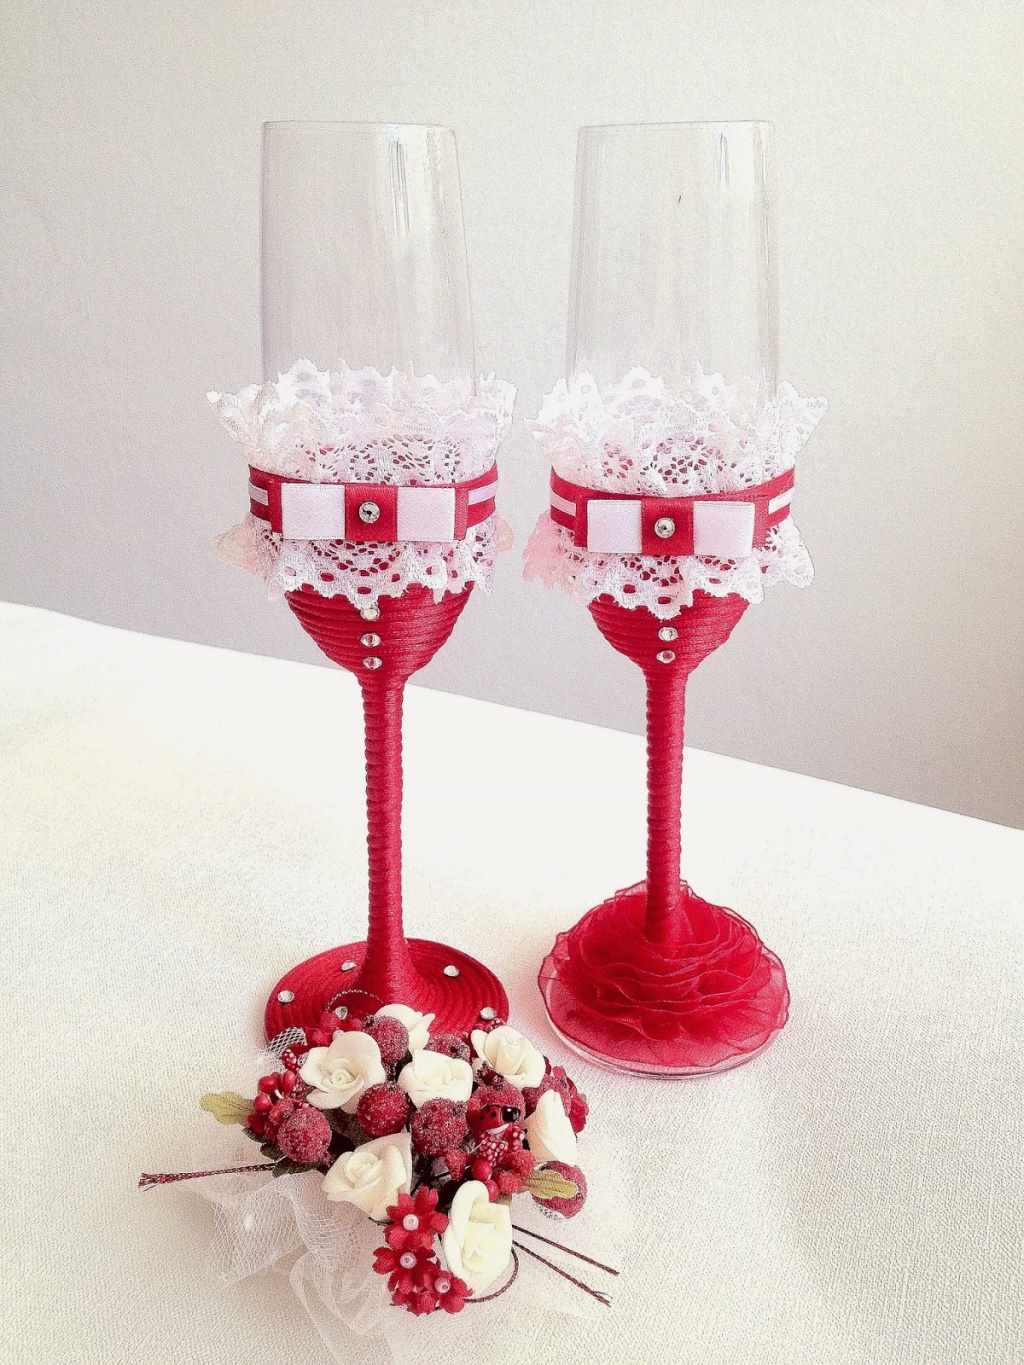 Példa az esküvői poharak dekorációjának szokatlan dekorációjára